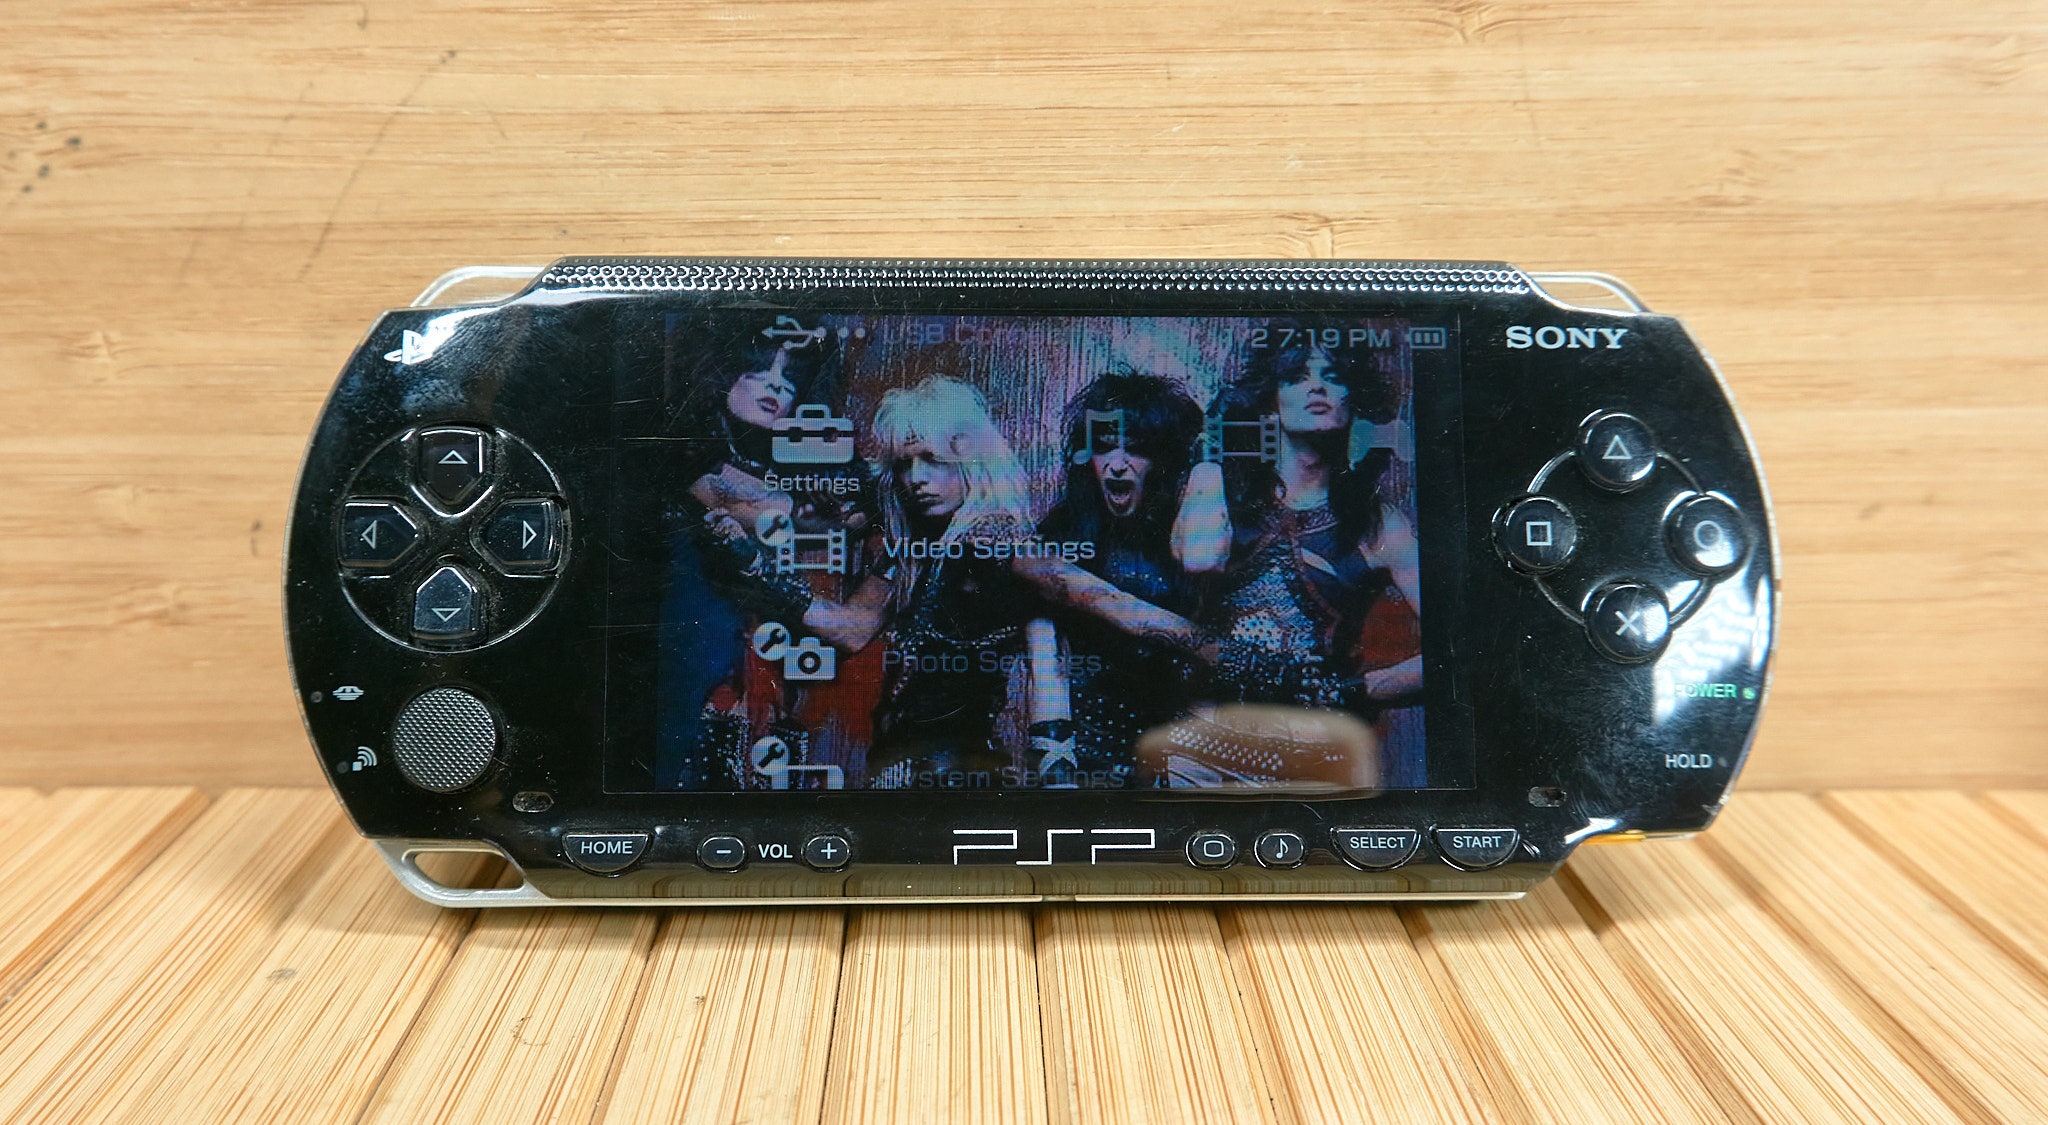 Paquet 7 - Console de jeu PSP originale 3000 reconditionnée pour